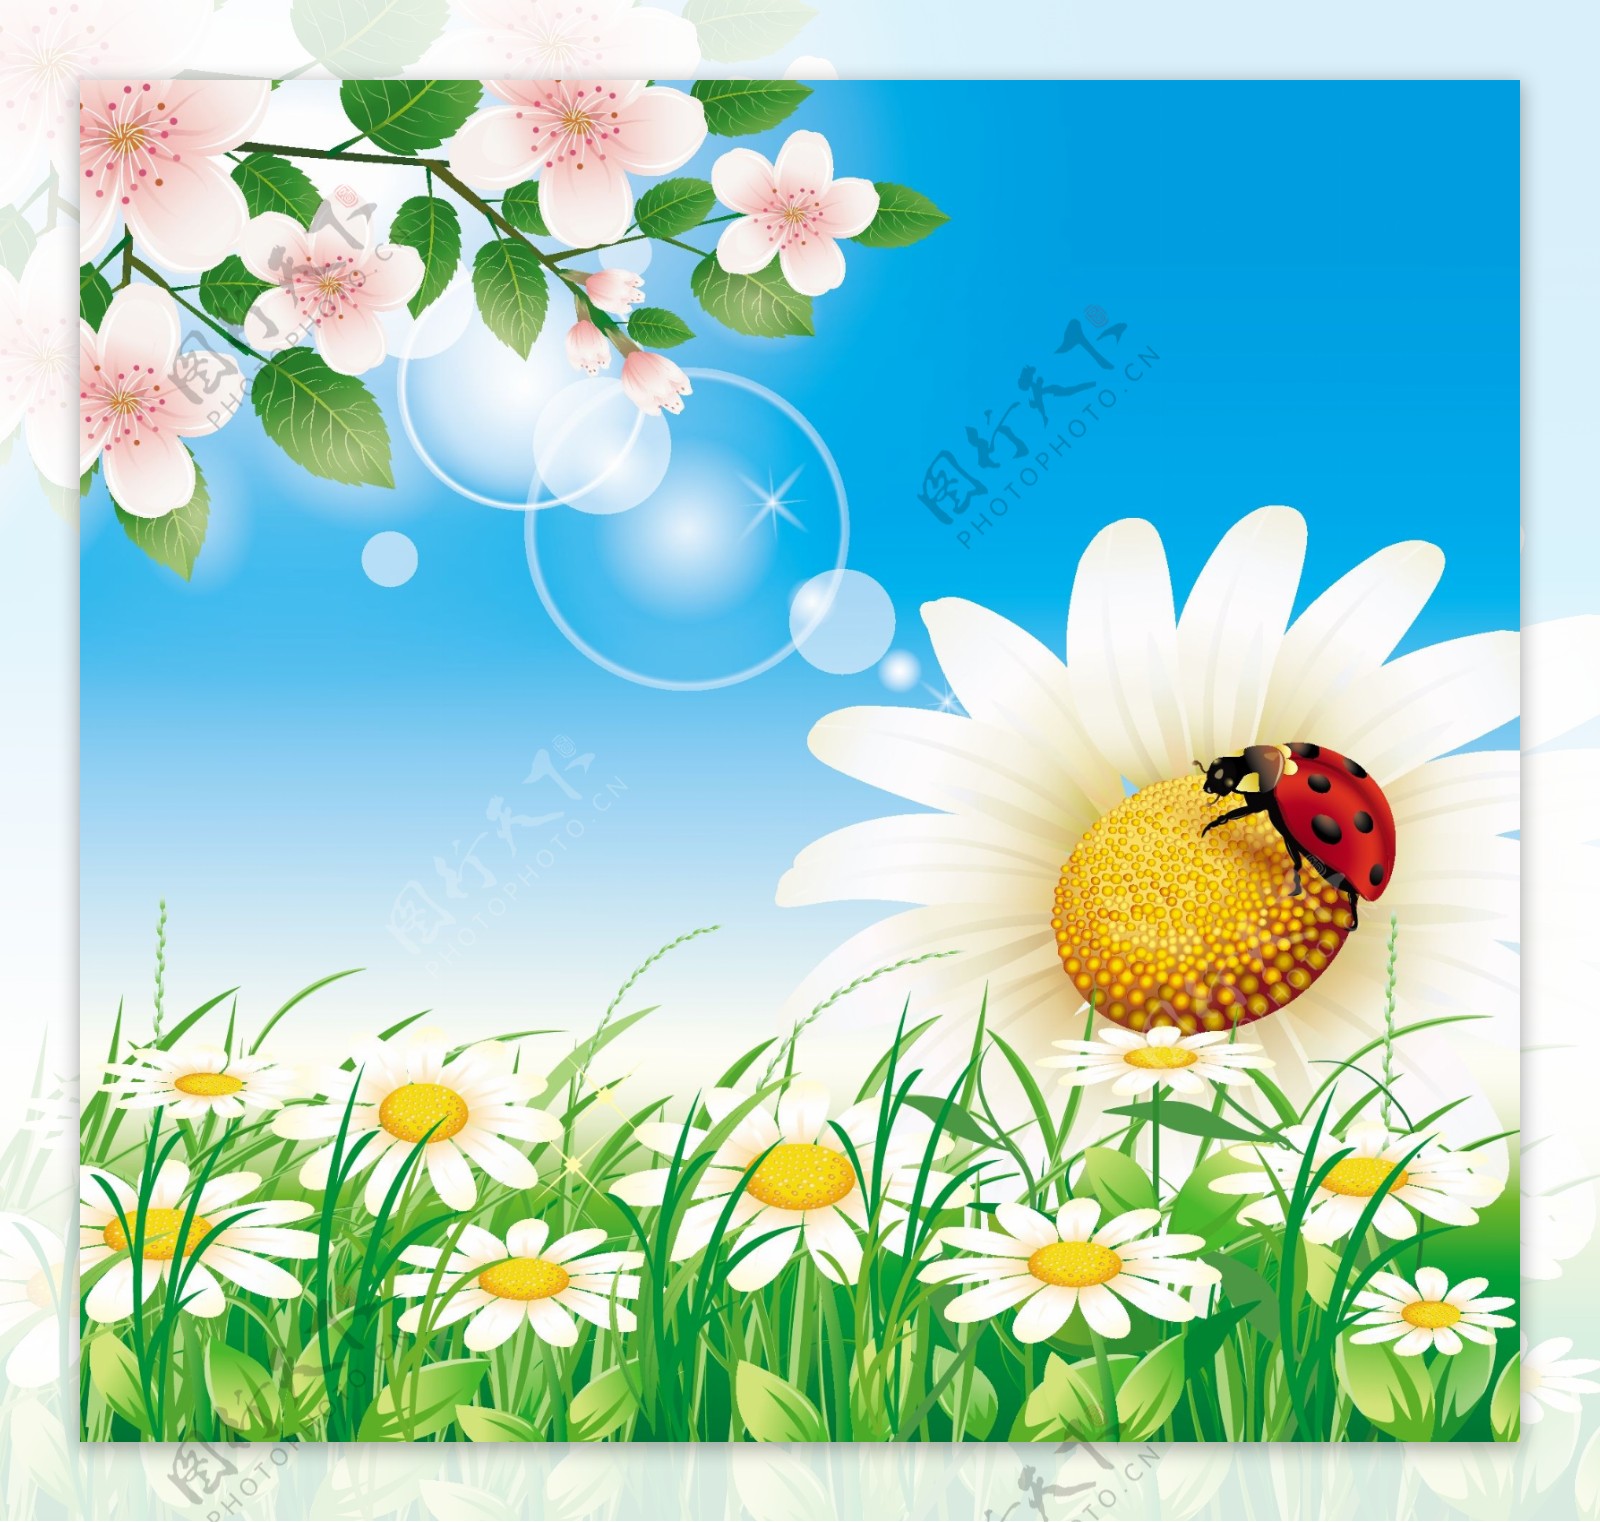 夏天花卉花朵背景图片